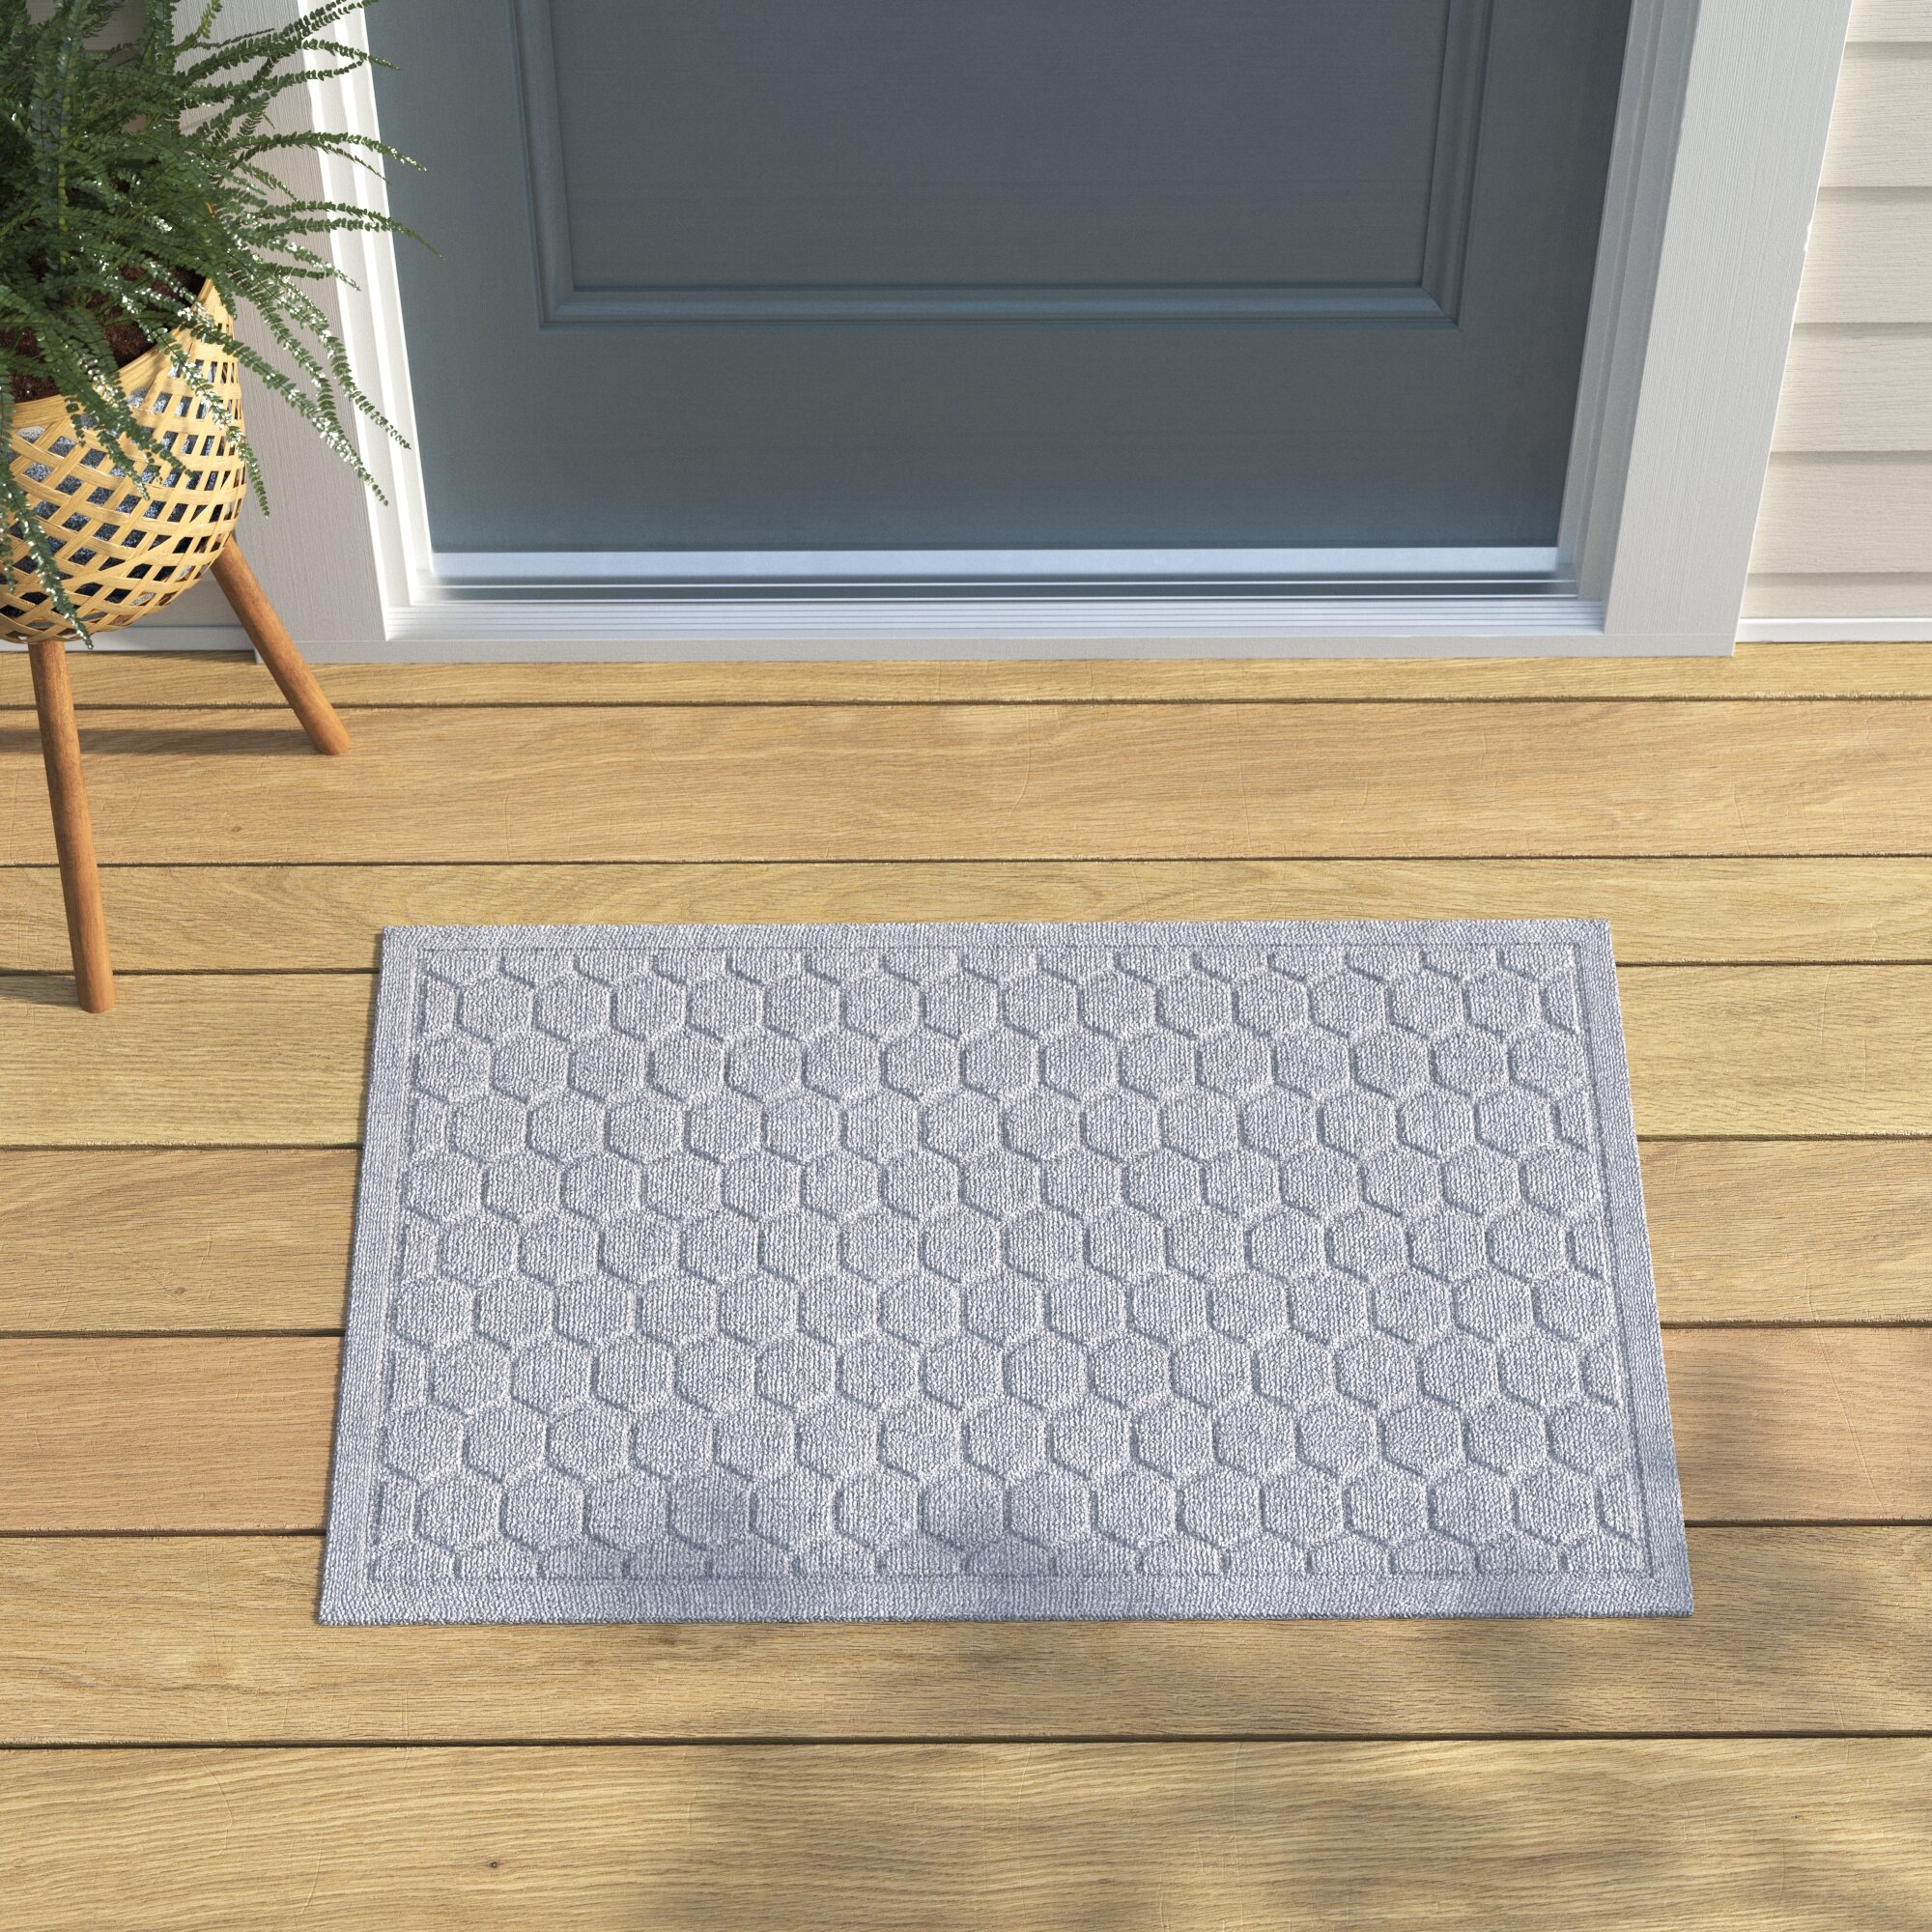 Waterhog Deanna Indoor Outdoor Doormat Matterly Color: Dark Brown